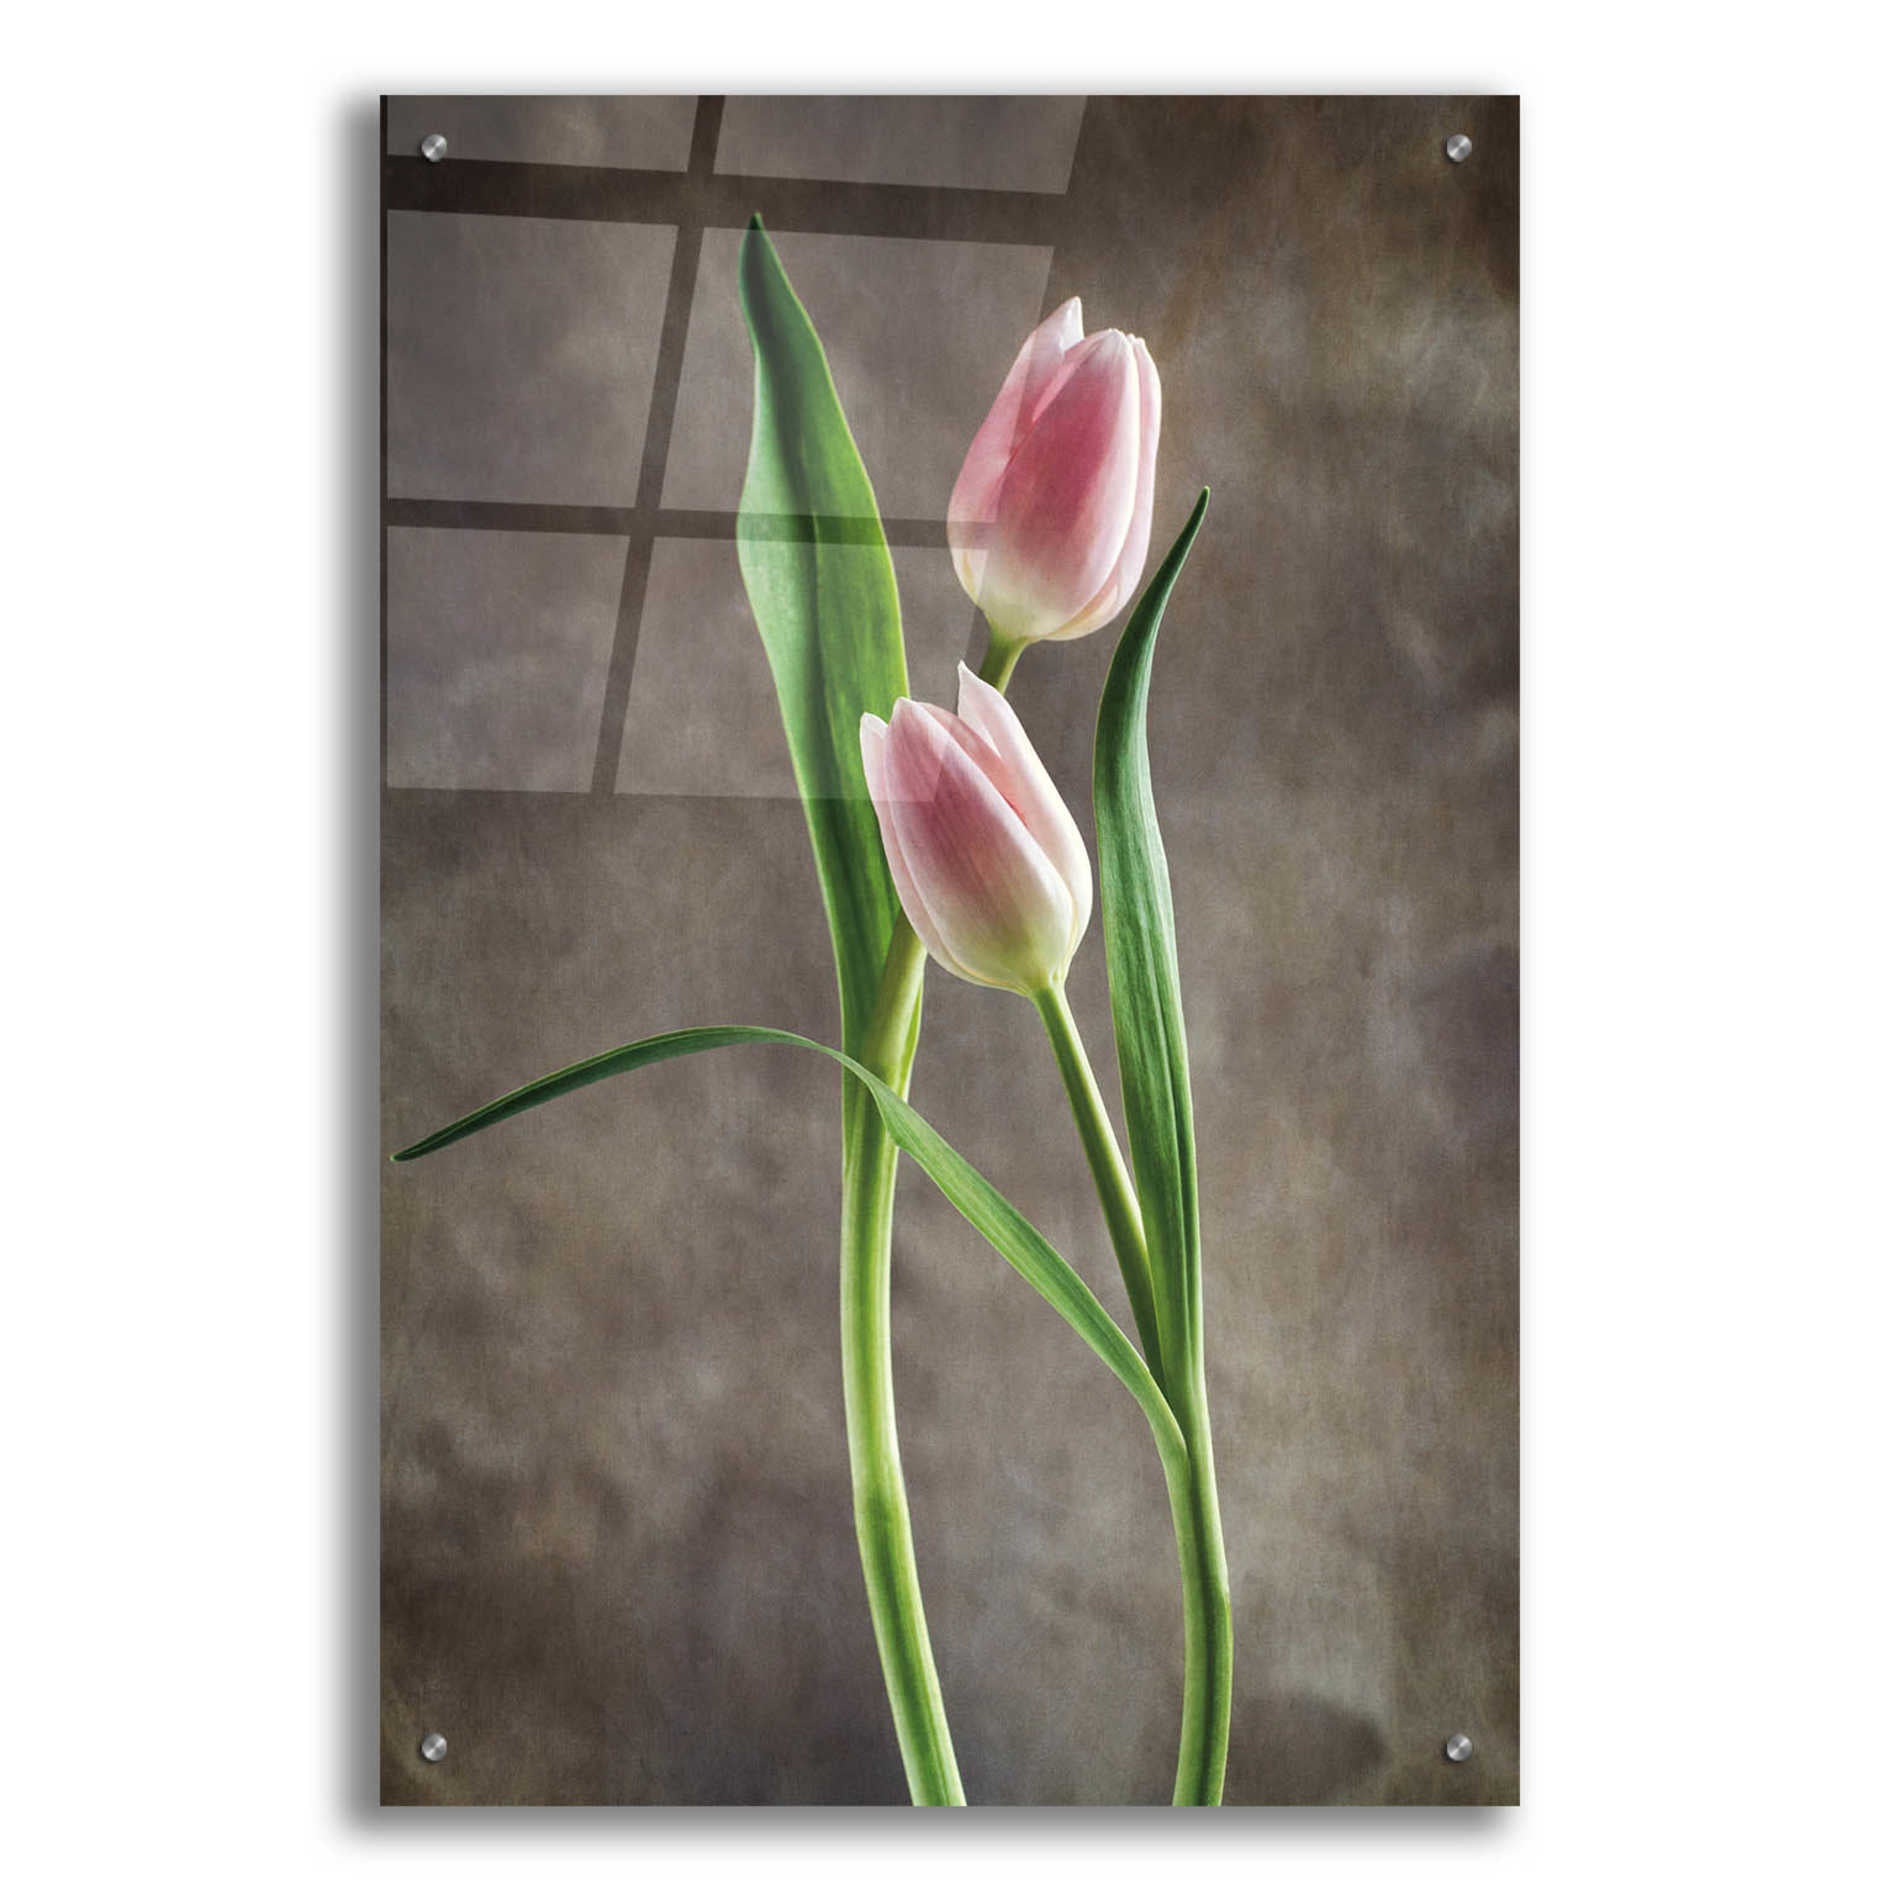 Epic Art 'Spring Tulips VI' by Debra Van Swearingen, Acrylic Glass Wall Art,24x36